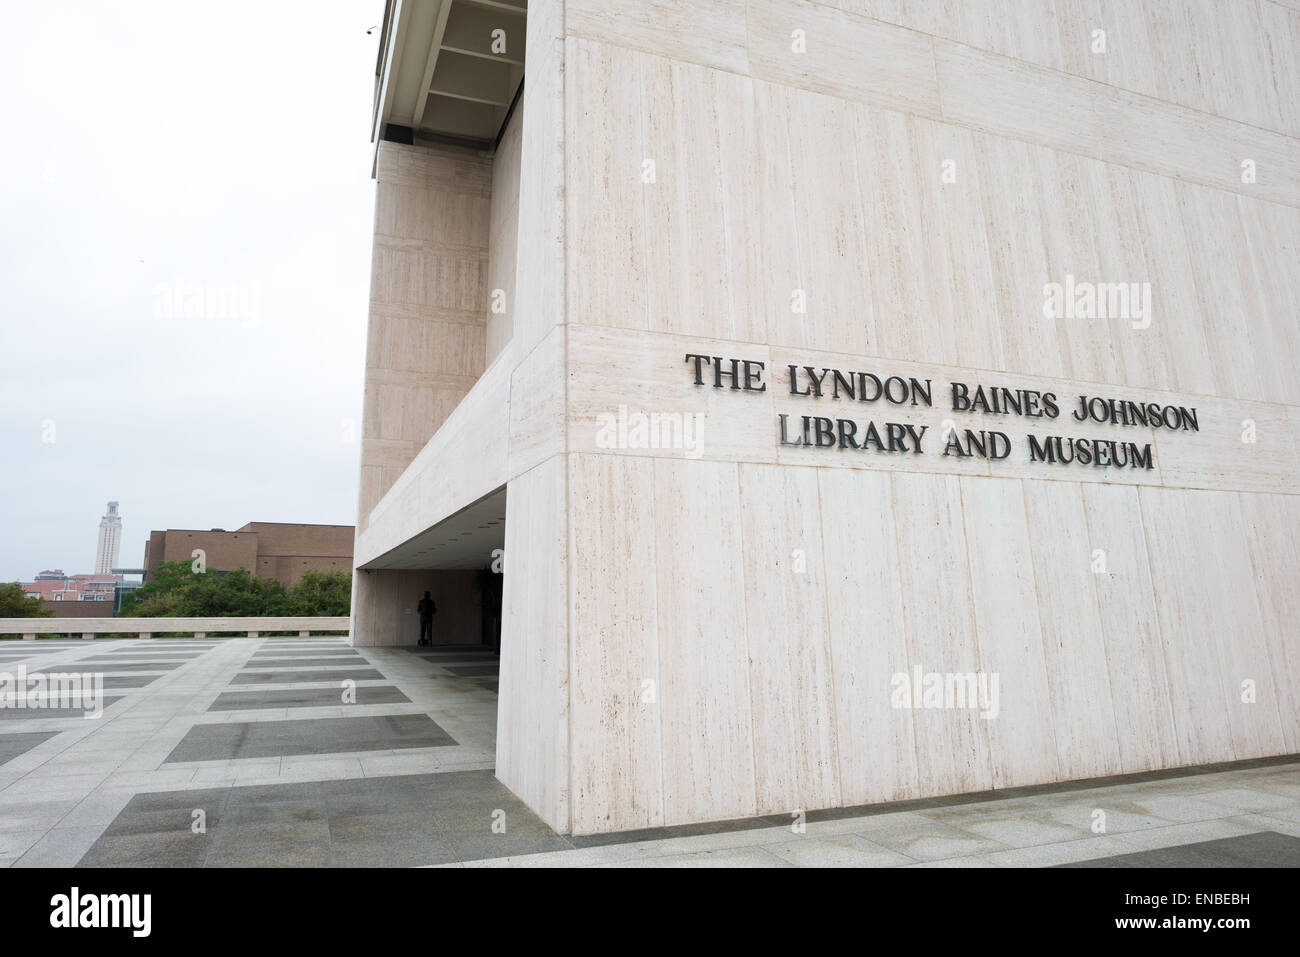 AUSTIN, Texas - la LBJ Library and Museum (LBJ Presidential Library) est l'une des 13 bibliothèques présidentielles administrées par la National Archives and Records Administration. Il abrite des documents historiques de la présidence et de la vie politique de Lyndon Johnson ainsi qu'un musée. Banque D'Images